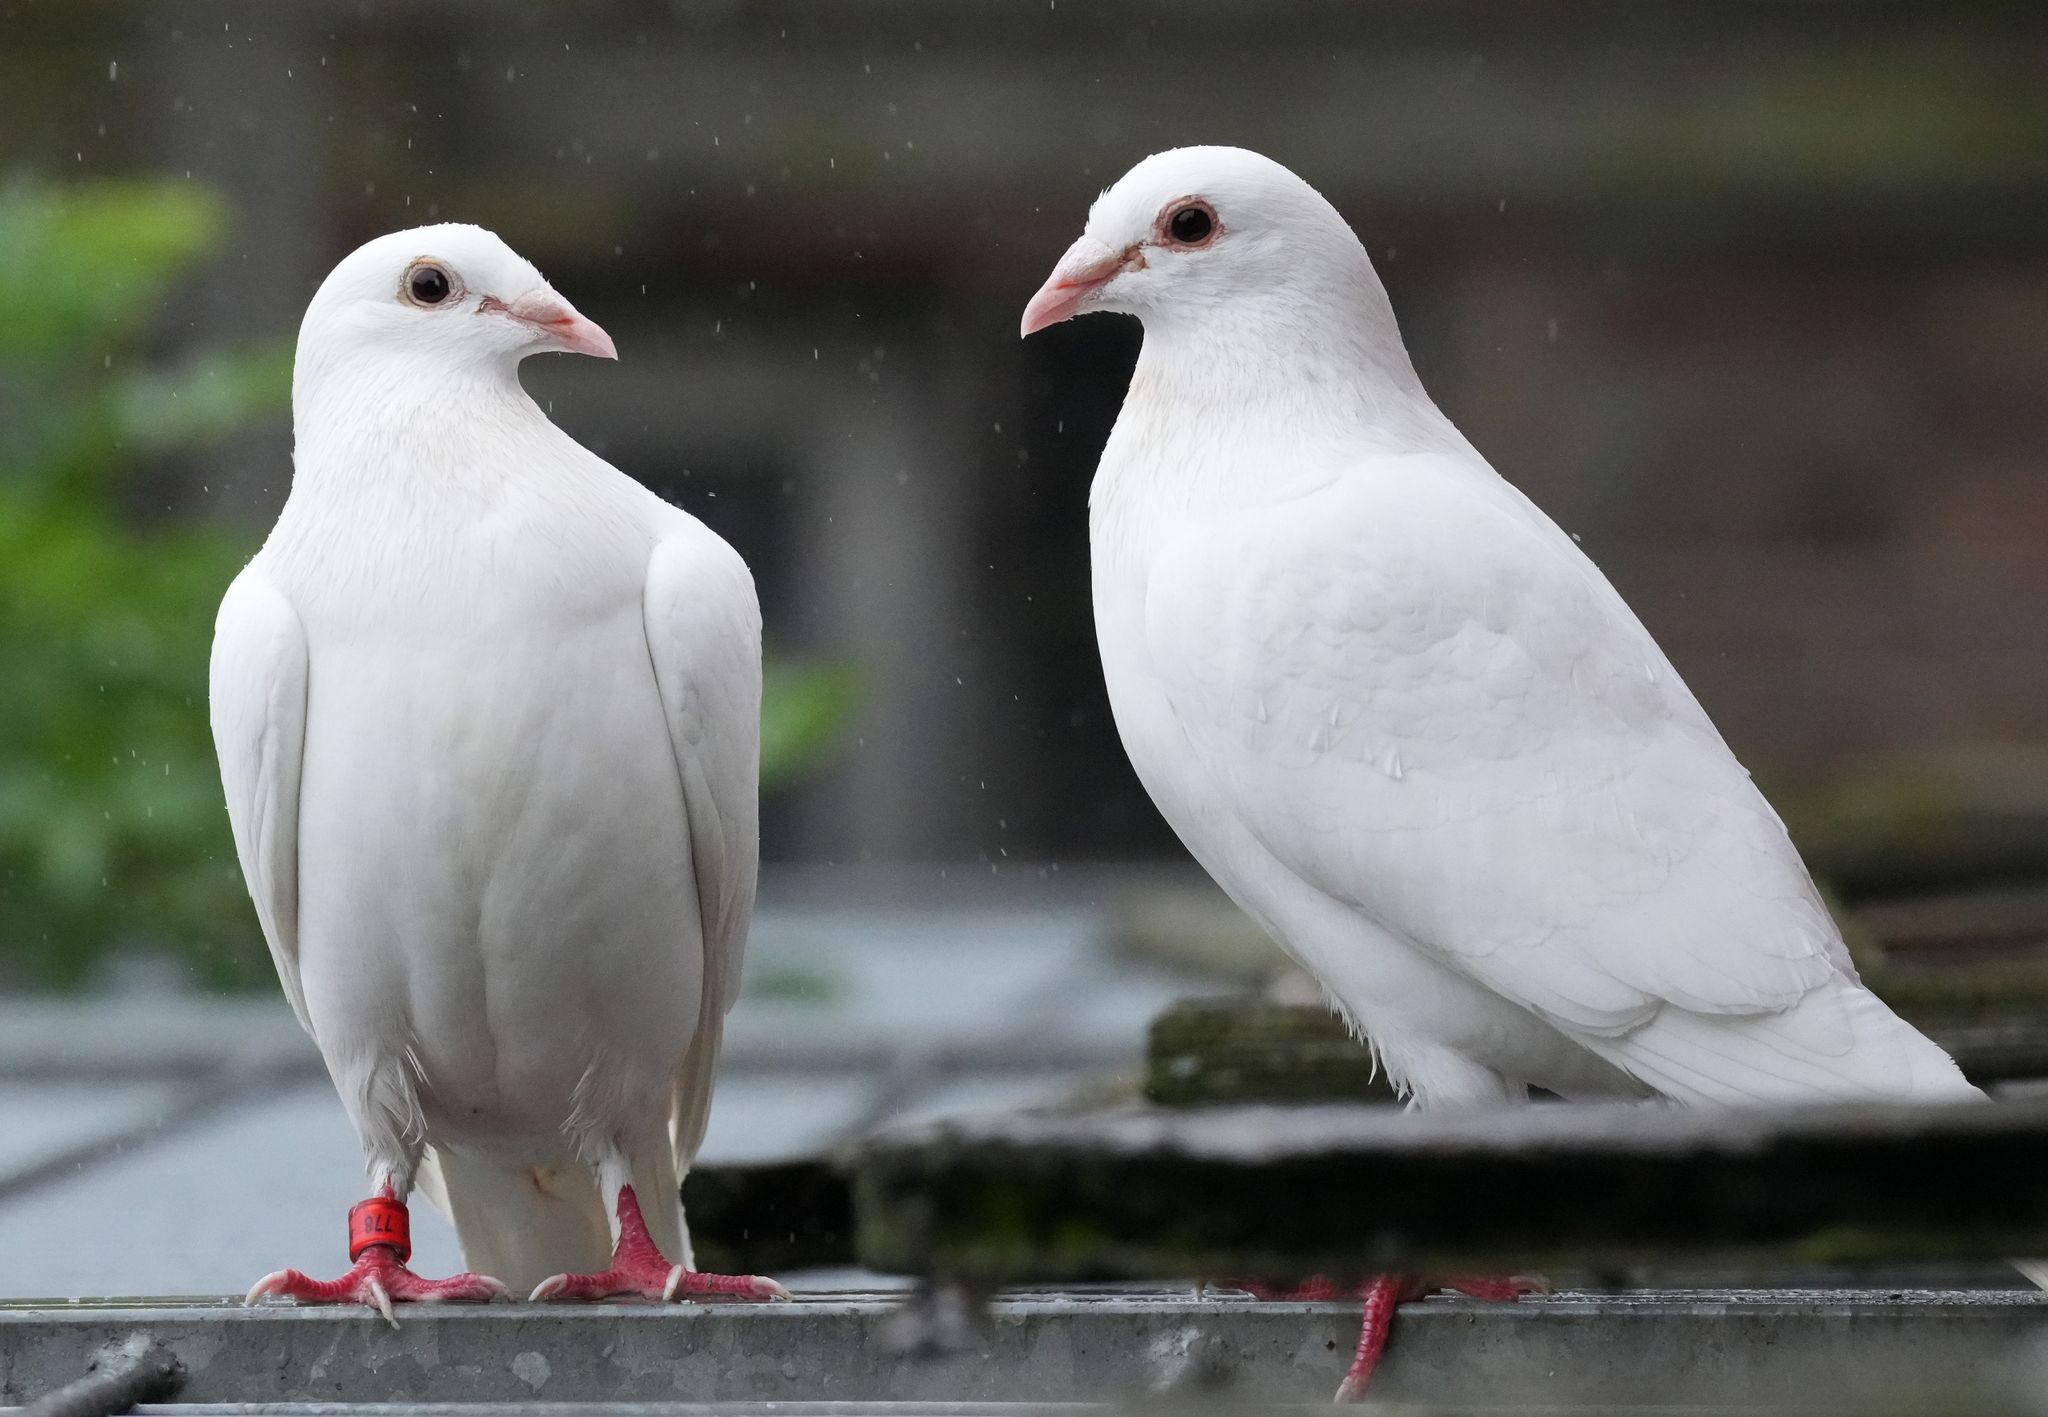 Den Brauch, Tauben bei Hochzeiten aufsteigen zu lassen, gibt es schon seit vielen Jahren. Wegen ihrer auffälligen weißen Farbe werden weiße Tauben leichter von Greifvögeln erbeutet.